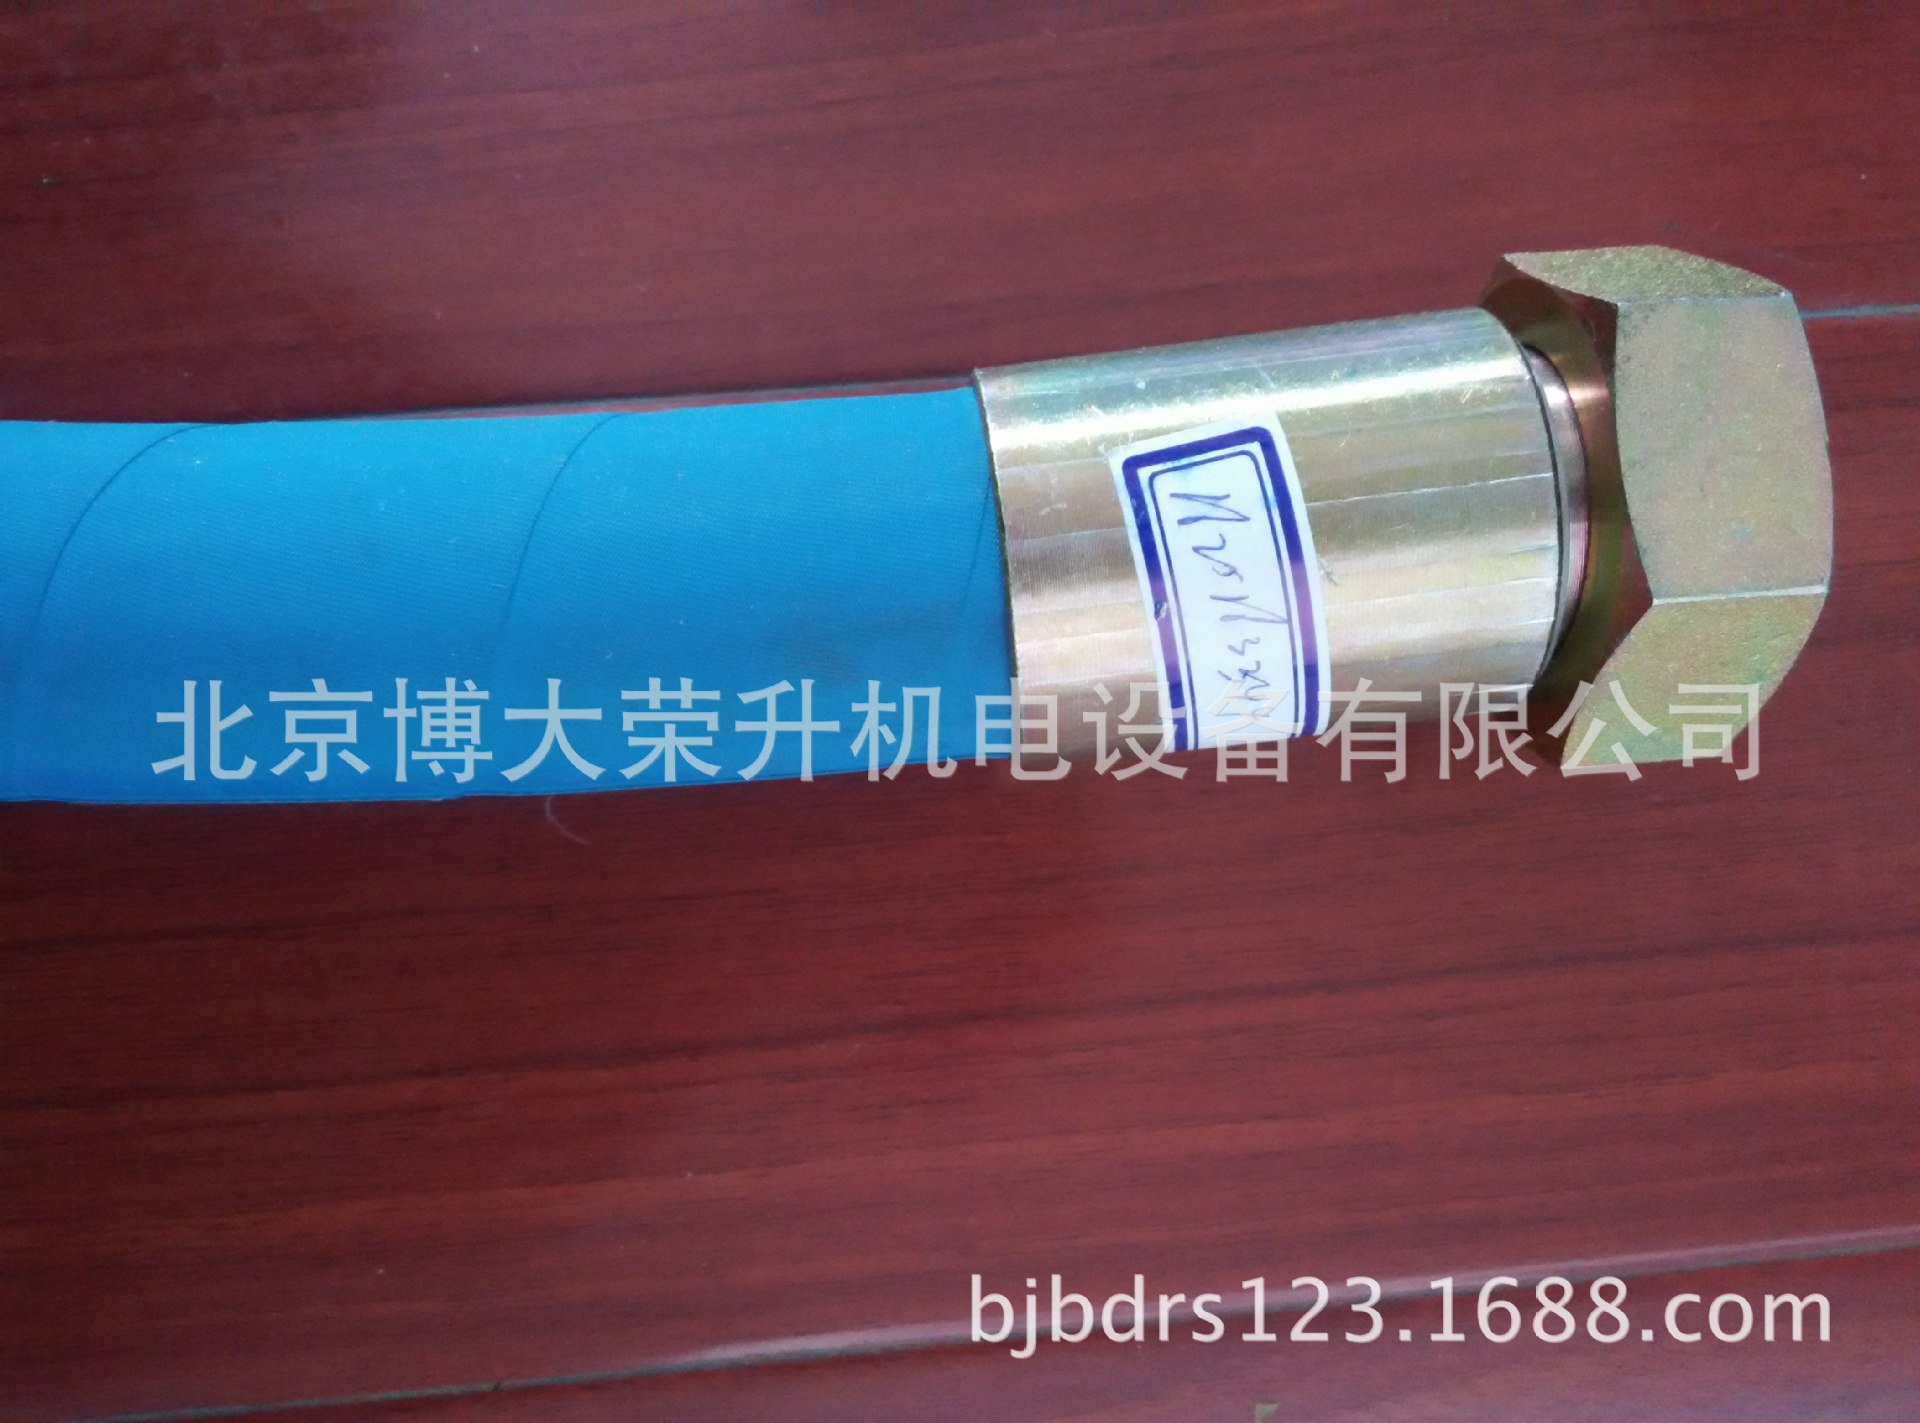 博莱特高压软管组件1625163377 博莱特空压机油管配件图片